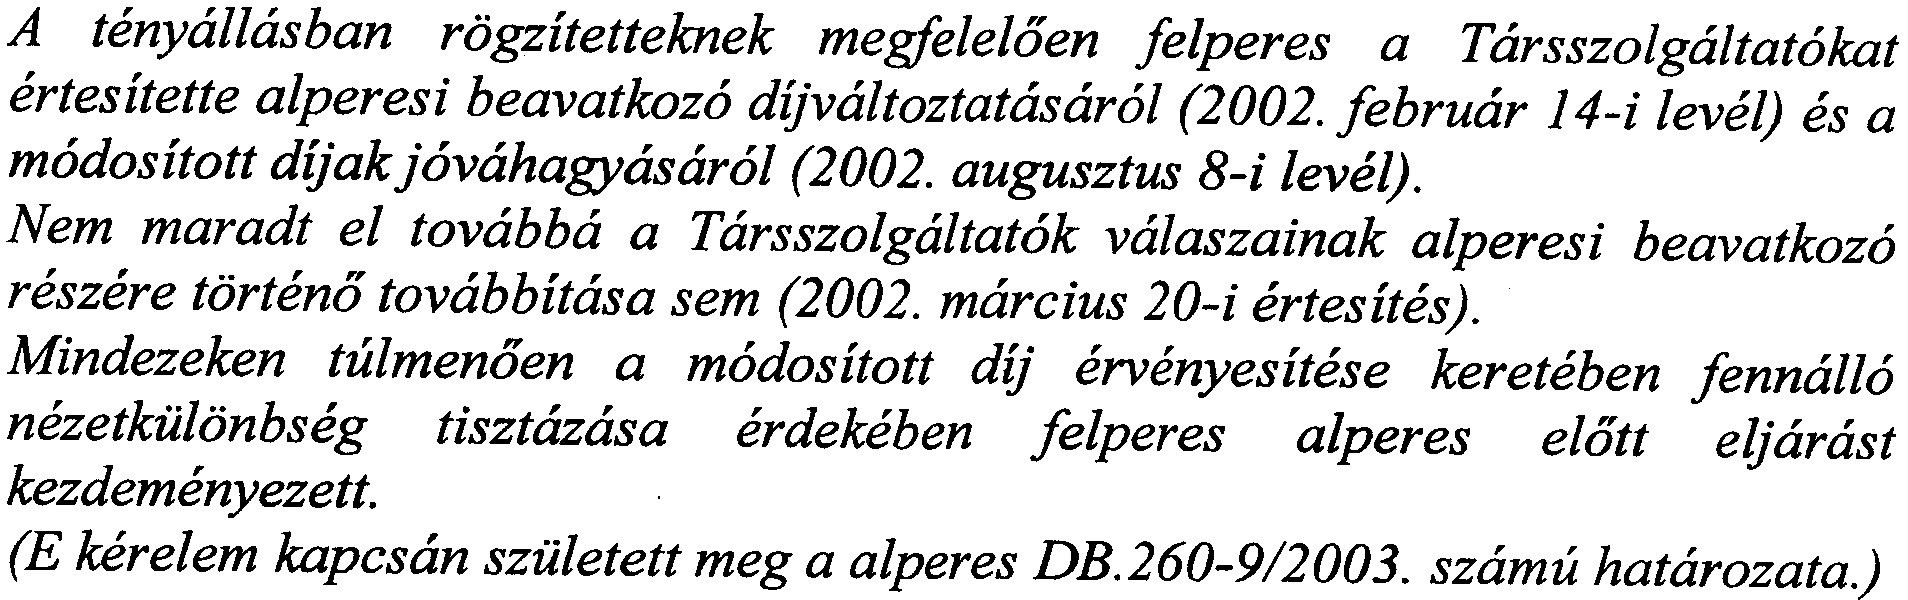 augusztus 8-i level). Nem maradt el tovabba a Tarsszolgaltatok valaszainak alperesi beavatkozo reszere tortena tovabbitasa sem (2002. marcius 20-i ertesites).